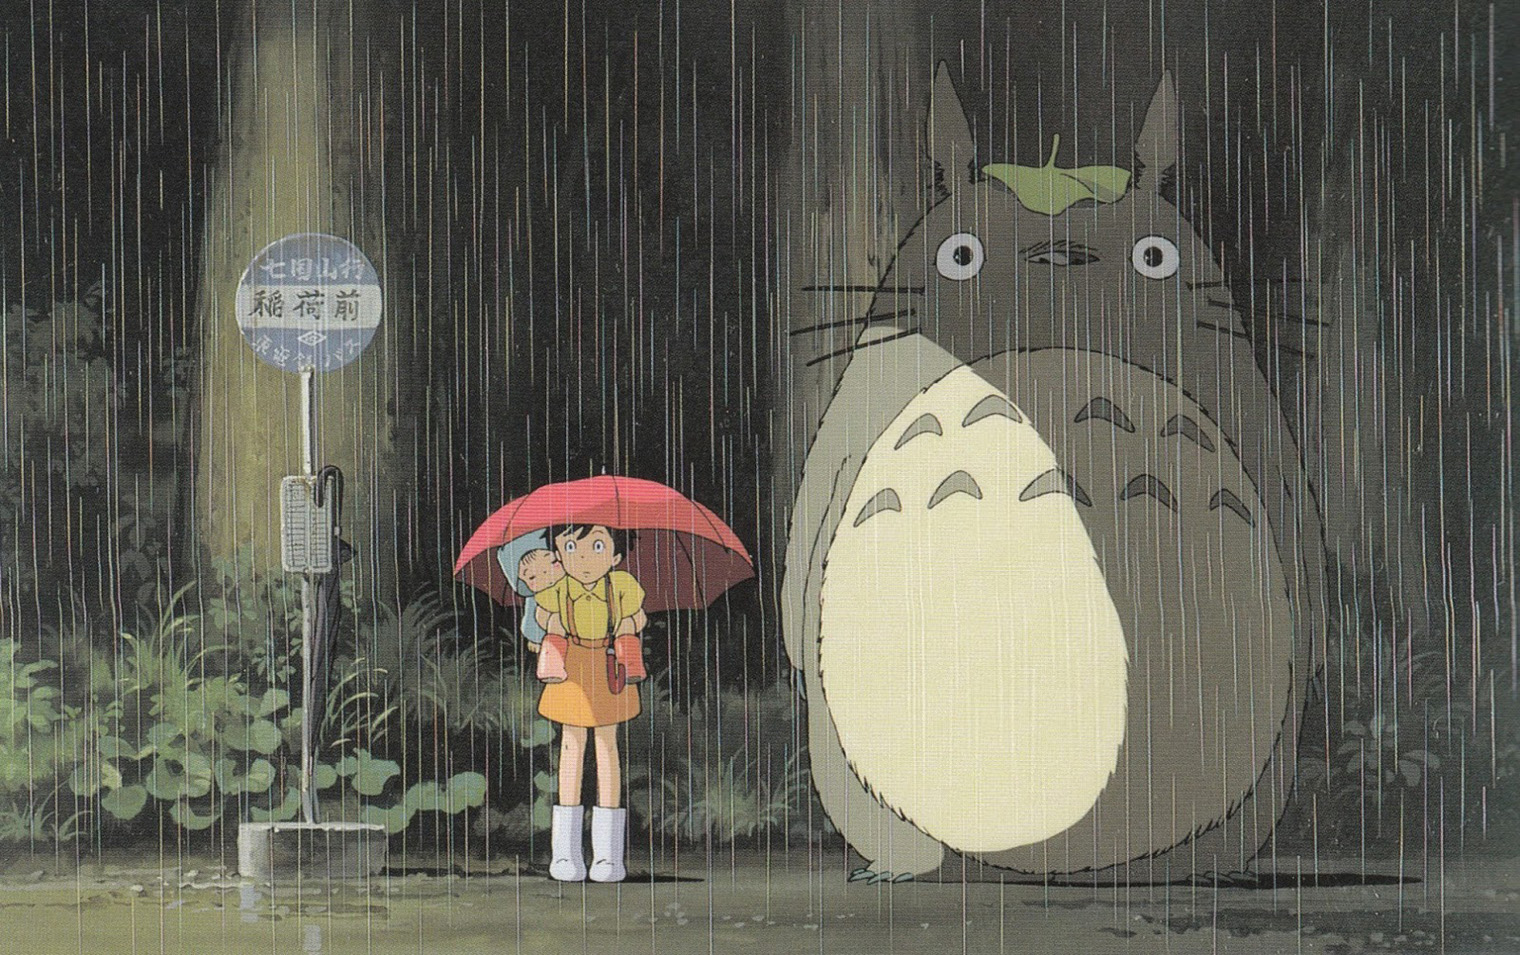 Герой получает имя Тоторо, потому что Мэй неправильно произносит японское слово «тролль» — «torooru». Источник: Studio Ghibli